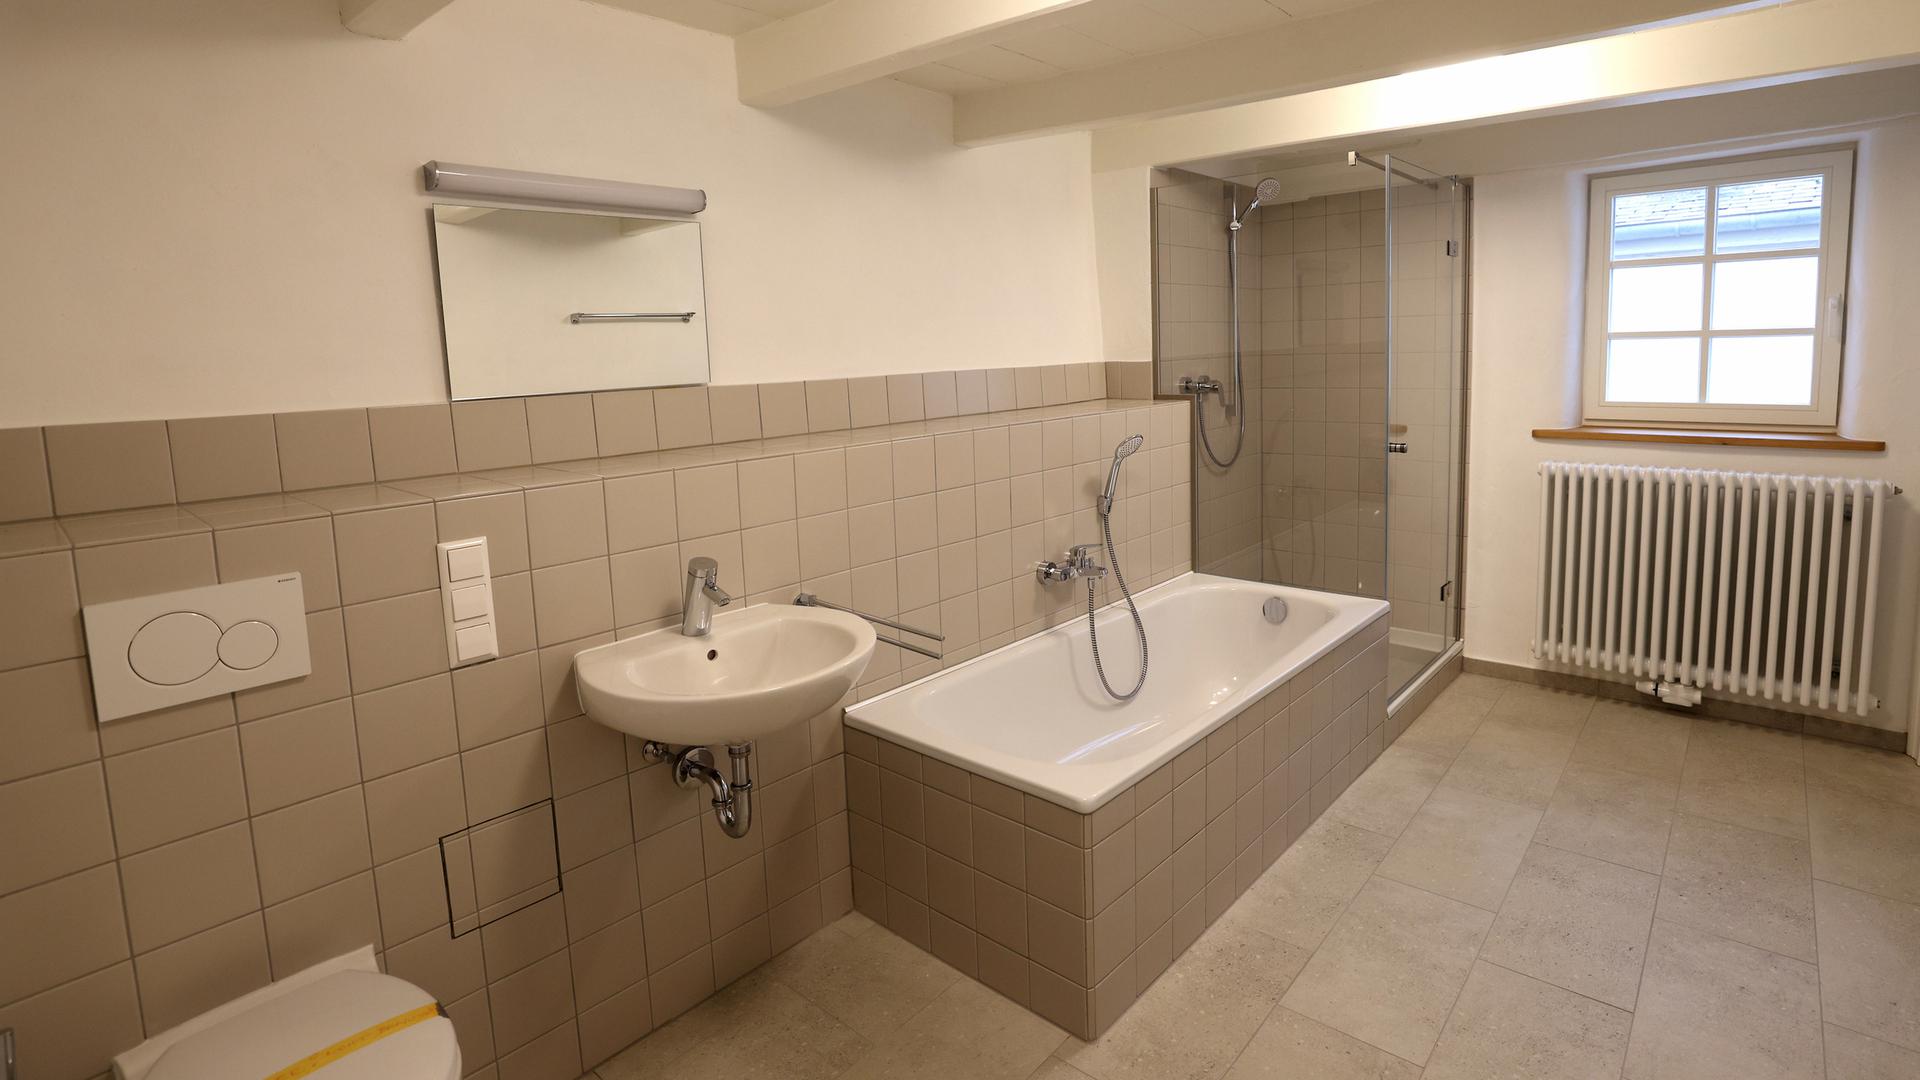 Carrelage moderne, baignoire et douche séparée, lumière du jour et en plus abordable - une rareté sur le marché du logement luxembourgeois. 